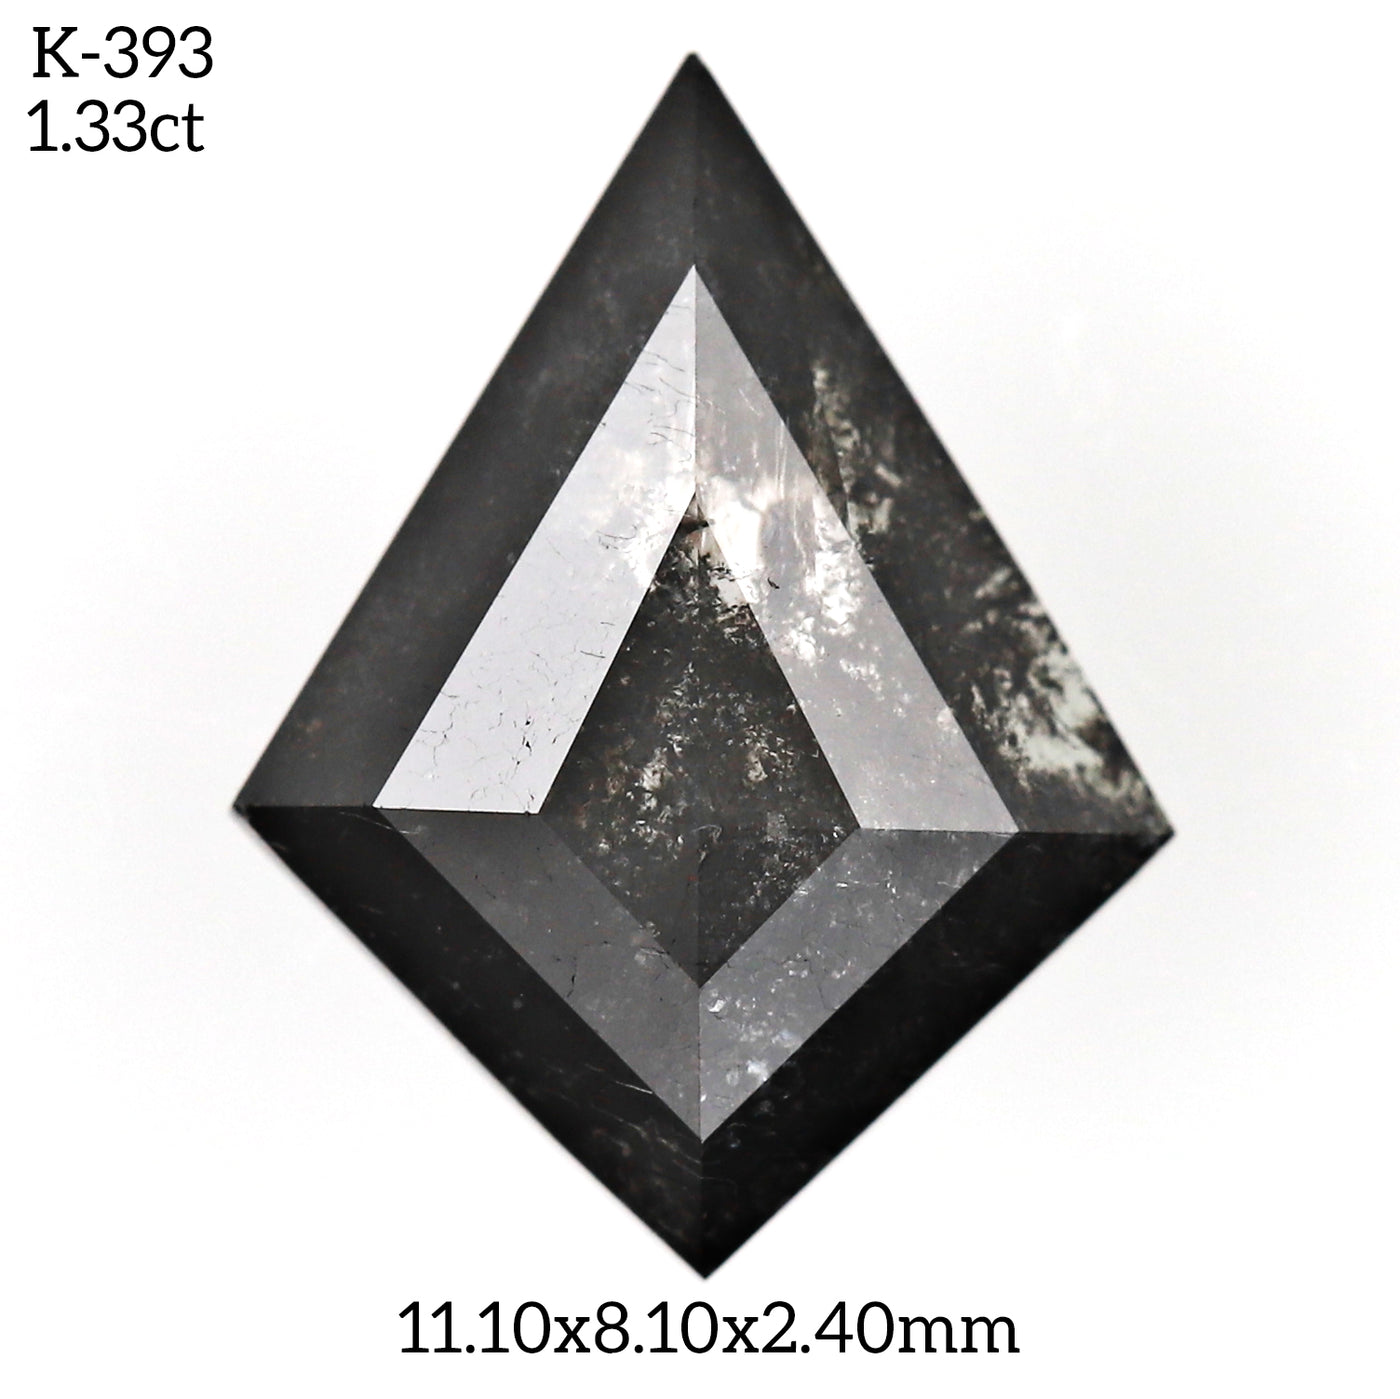 K393 - Salt and pepper kite diamond